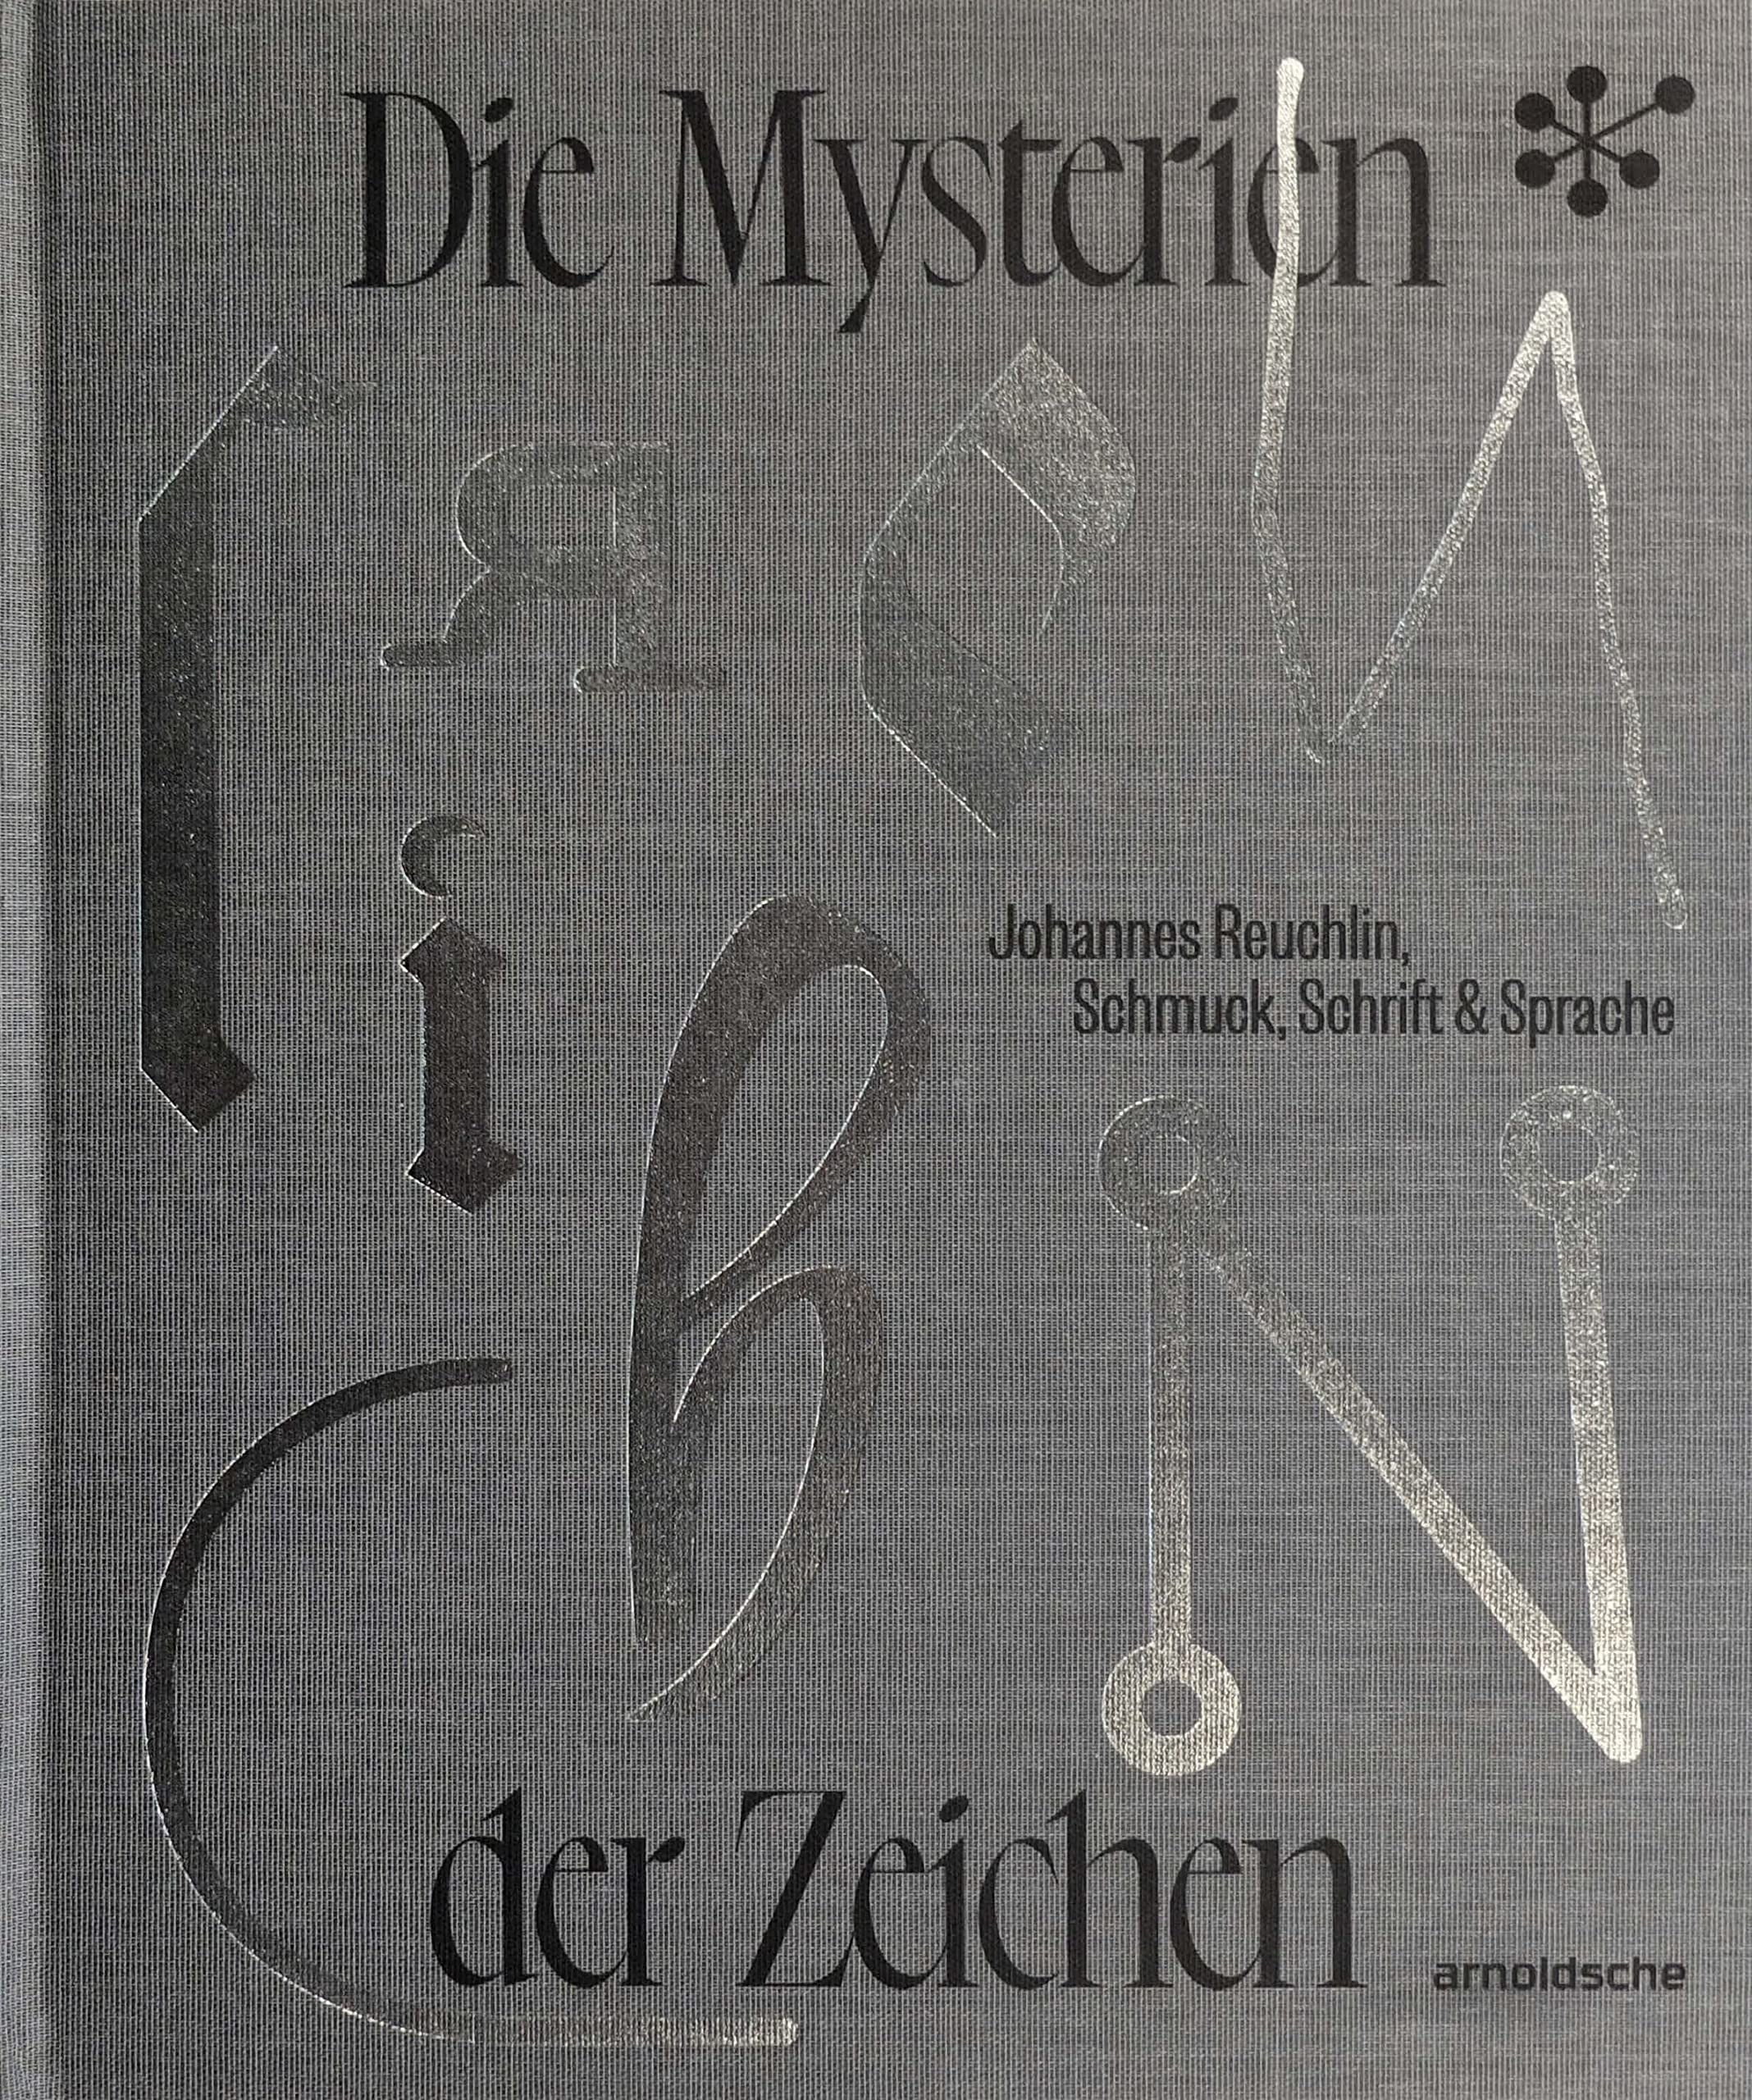 Die Mysterien der Zeichen: Johannes Reuchlin, Schmuck, Schrift & Sprache (German Edition)